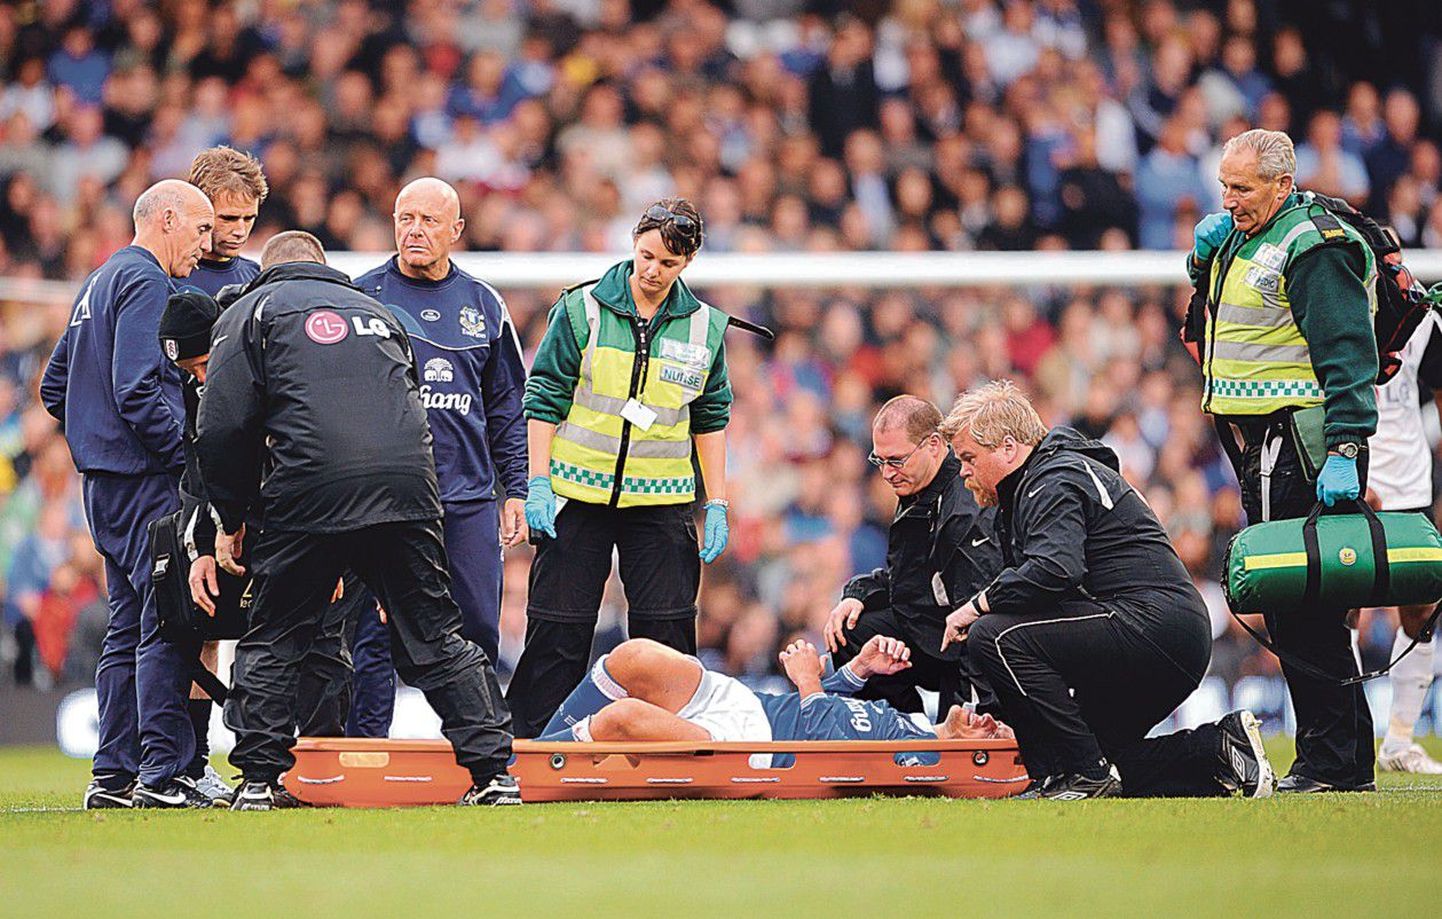 Футбол травматичный вид спорта не только потому, что таковы его особенности. Футбол еще и один из самых популярных видов спорта — вот почему статис­тика фиксирует так много футбольных травм. На фото травмированный игрок английского футбольного клуба Everton Фил Невилл.